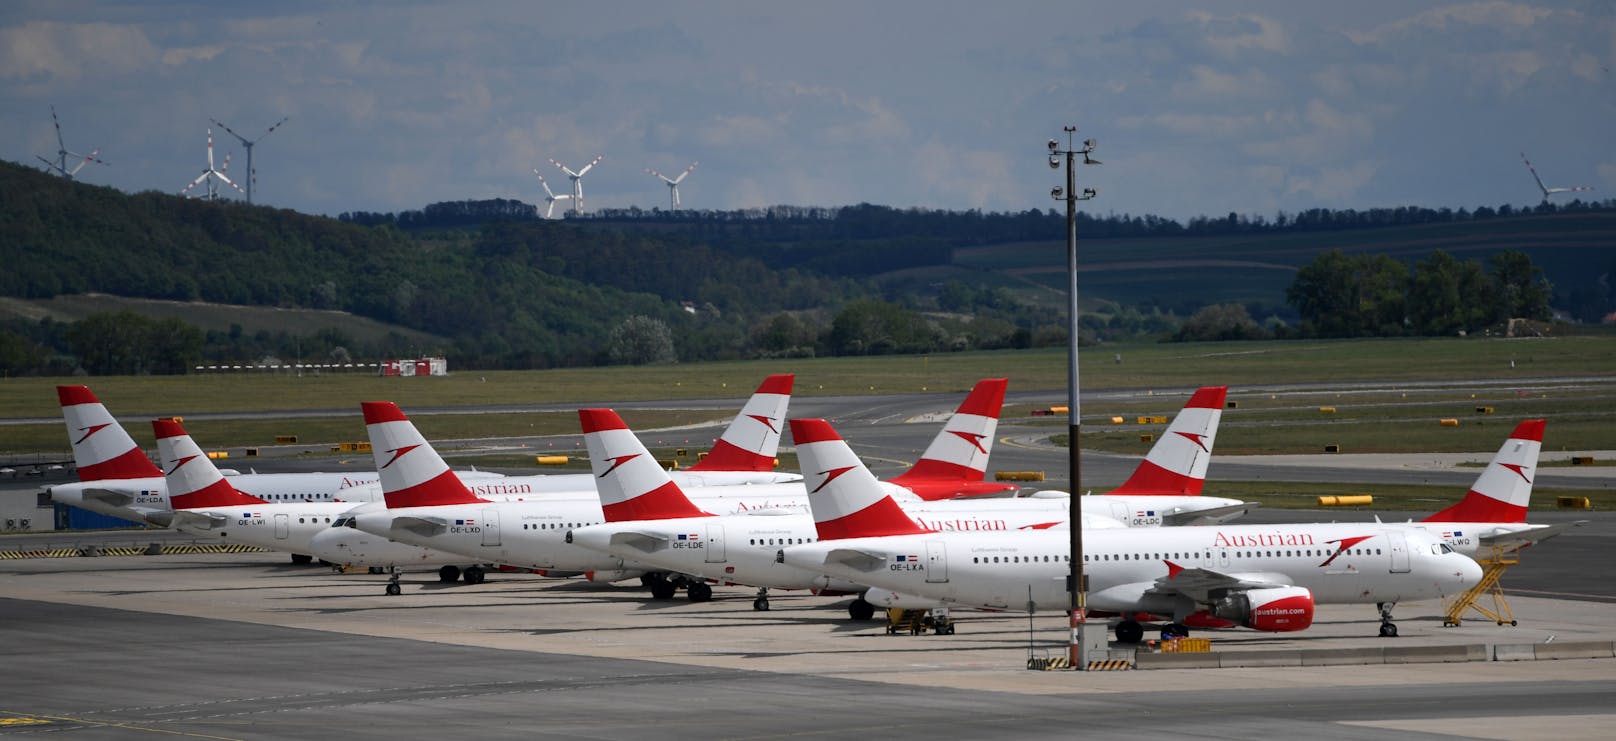 Es gibt hoffnungsvolle Signale für einen Neustart bei der österreichischen Fluglinie.